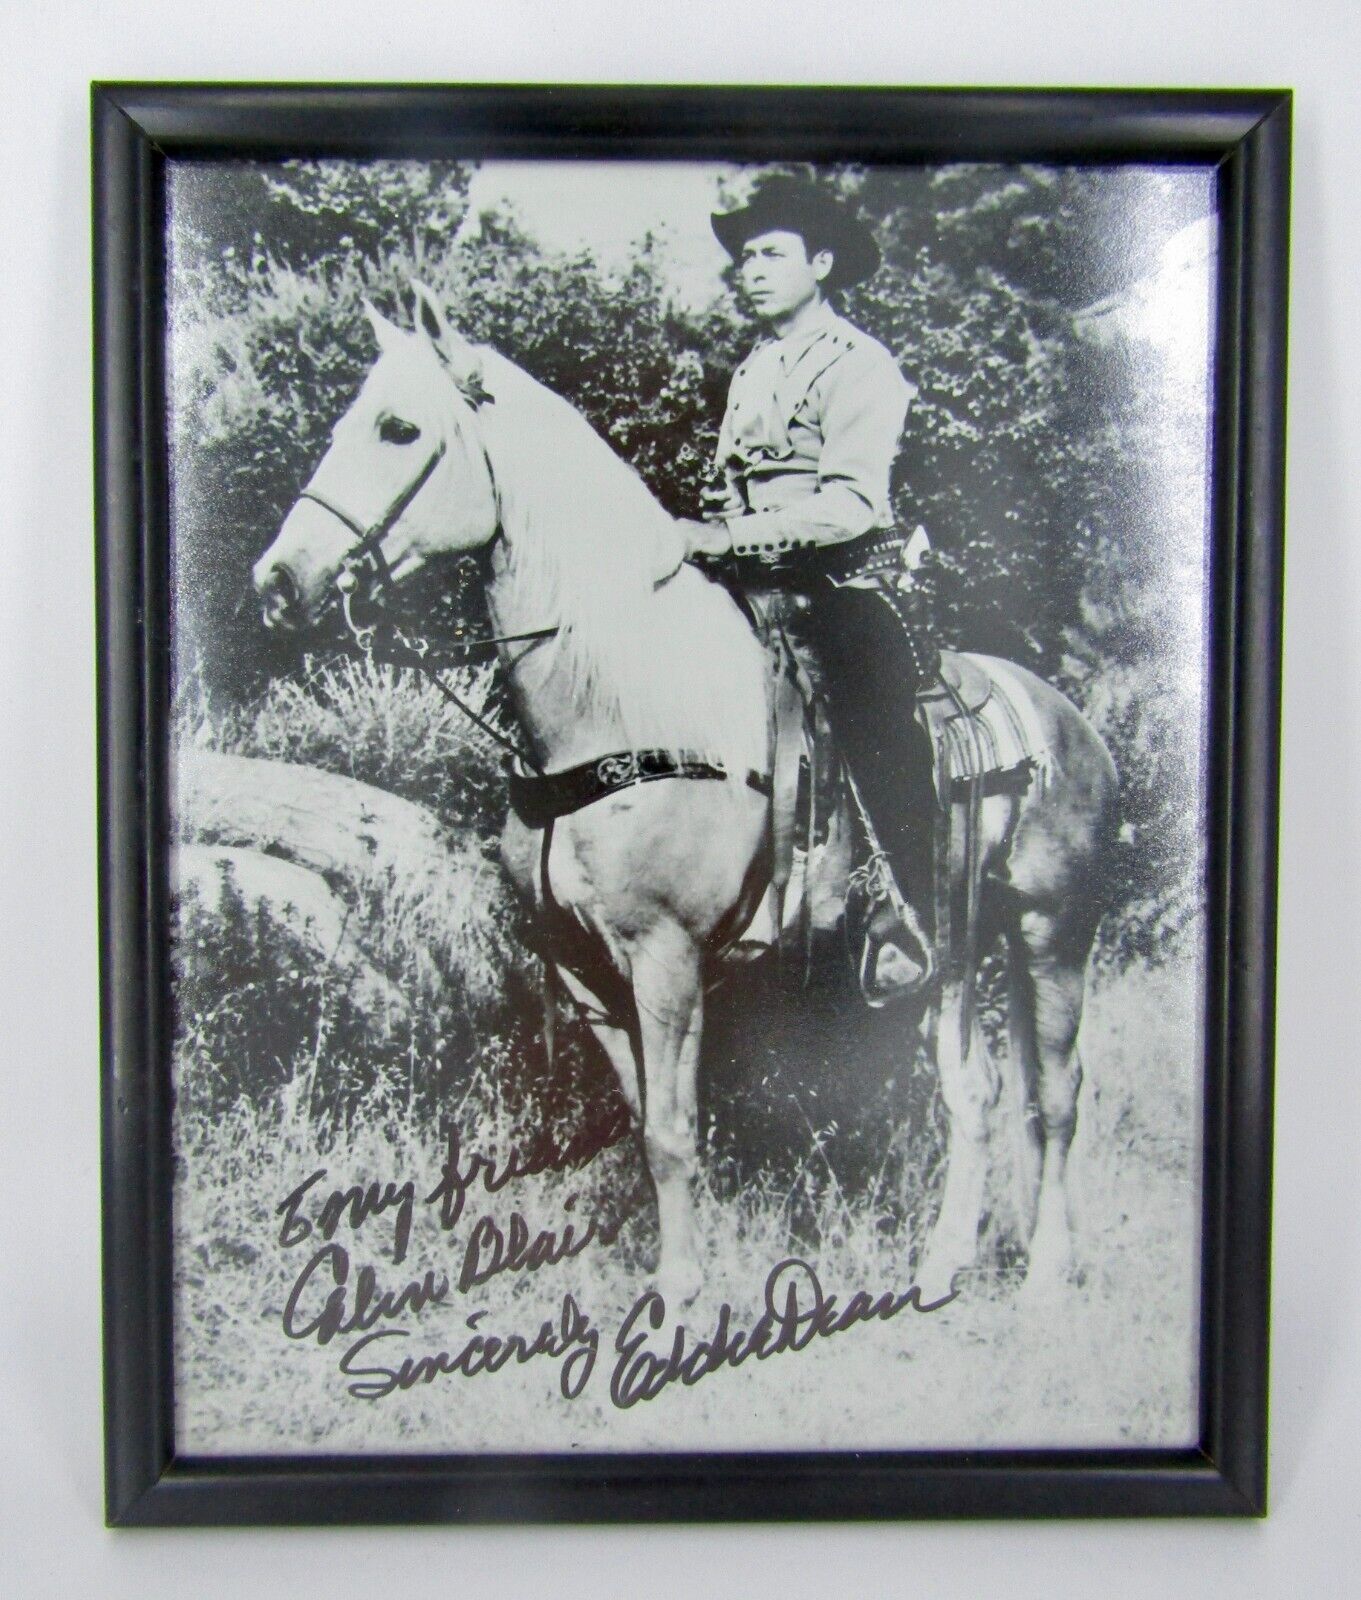 EDDIE DEAN COWBOY ACTOR - Signed / Autographed Publicity Still Photograph 10x8